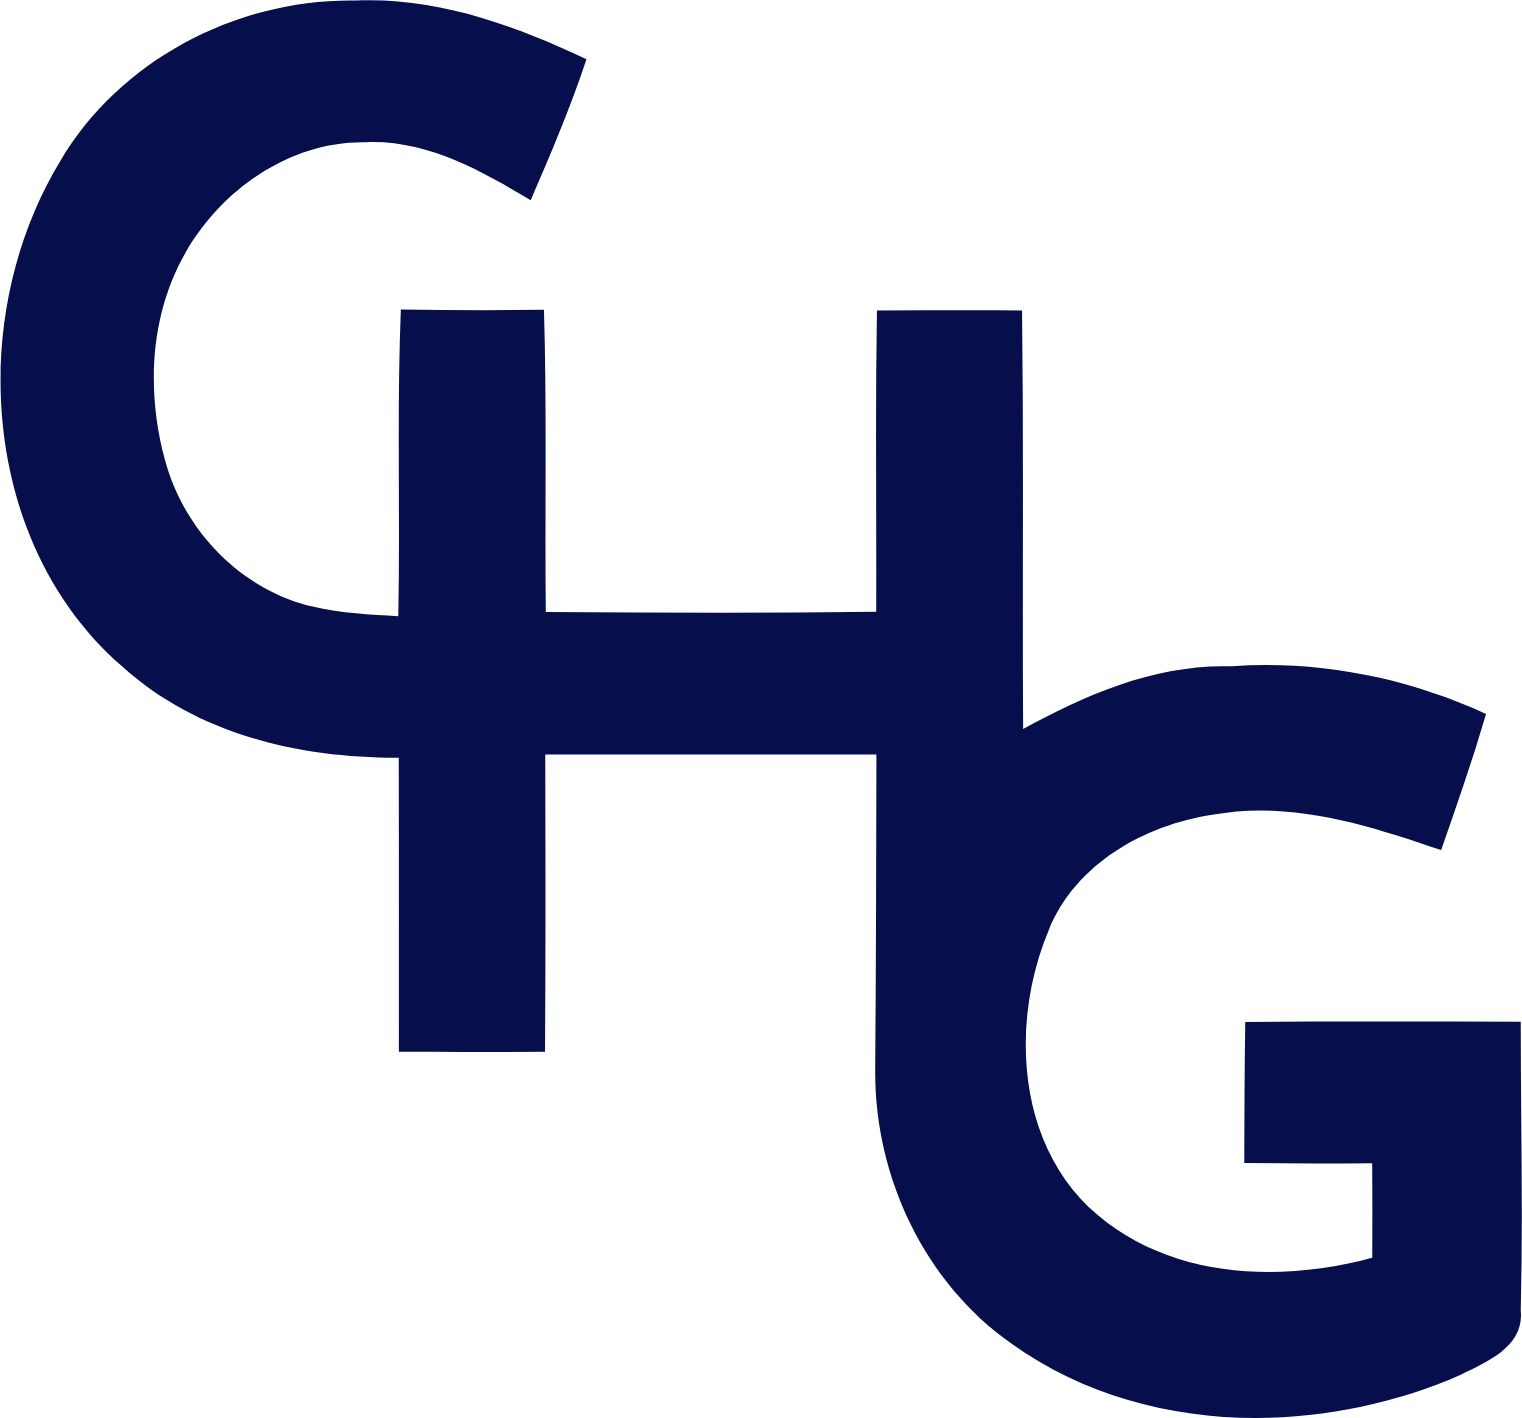 CorpHousing Group logo (transparent PNG)